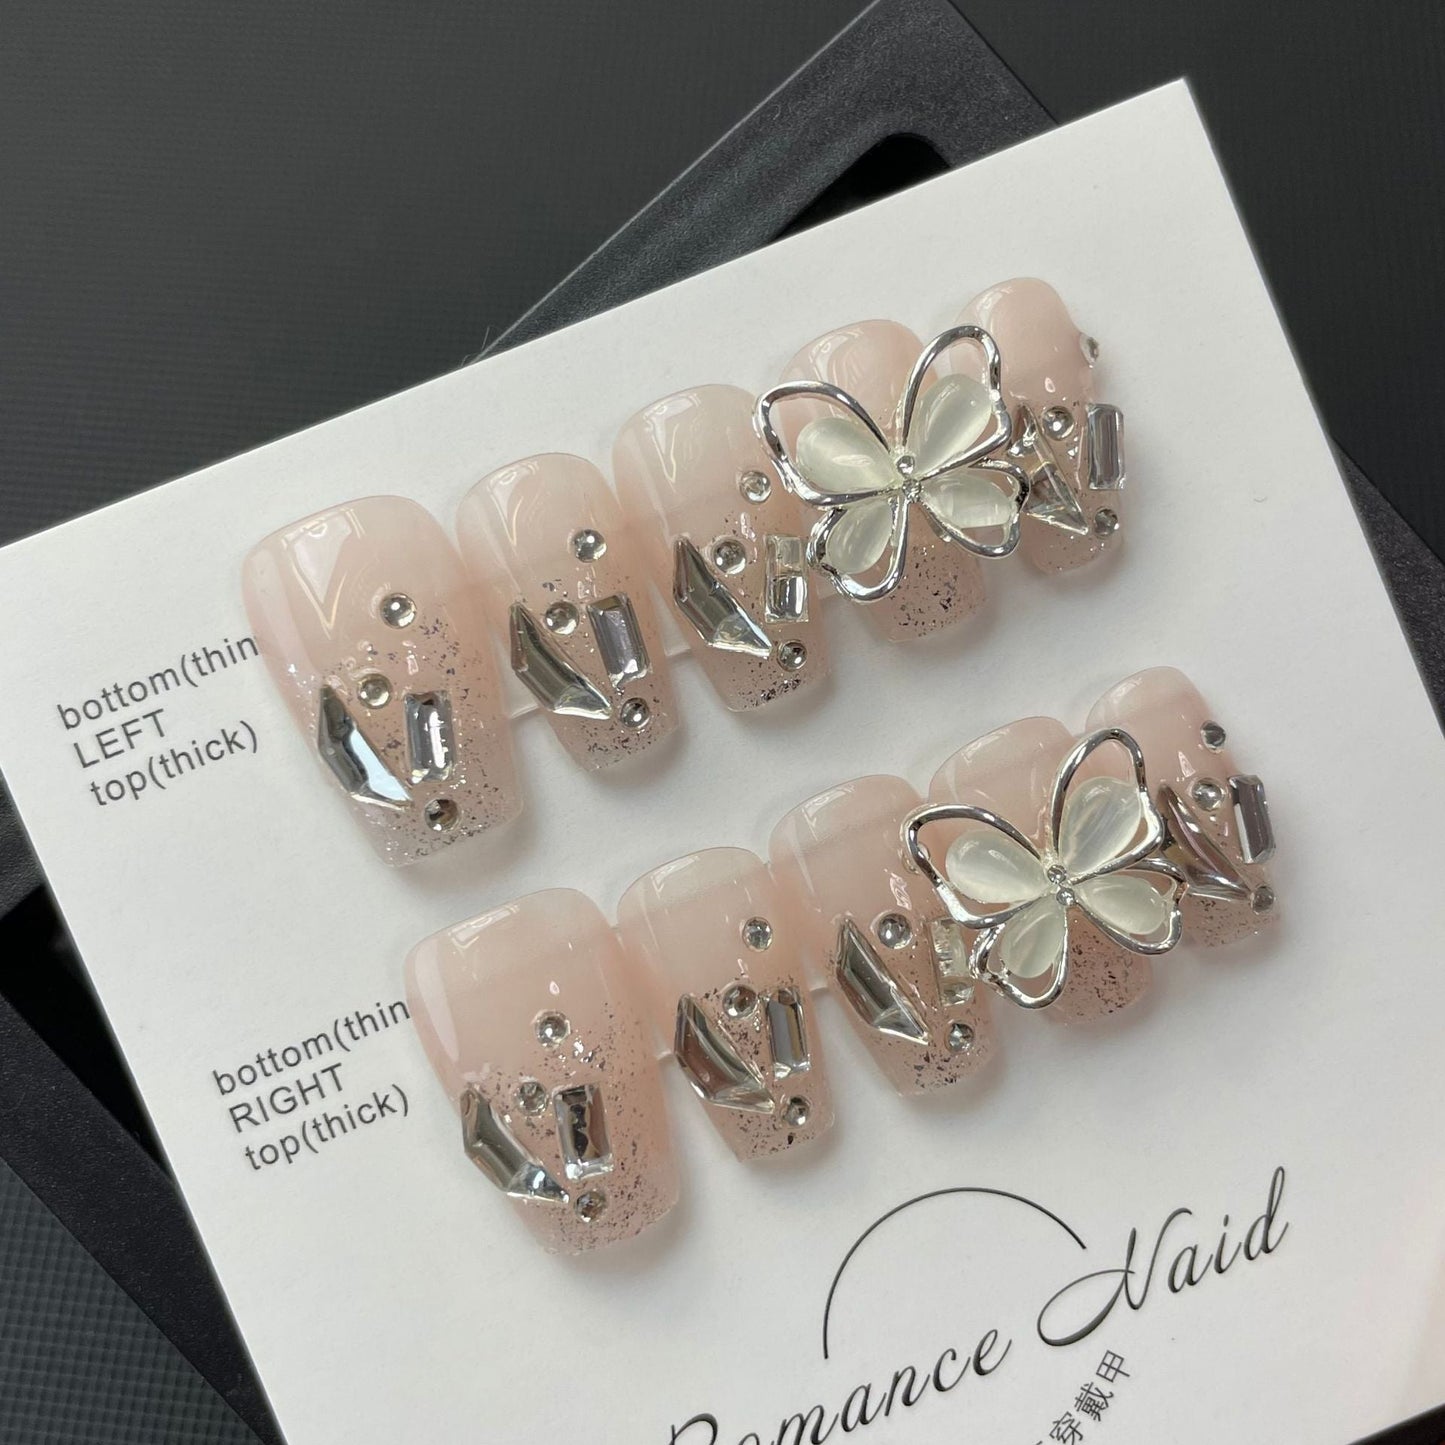 694/695 Presse style papillon sur les ongles 100% faux ongles faits à la main couleur nude rose